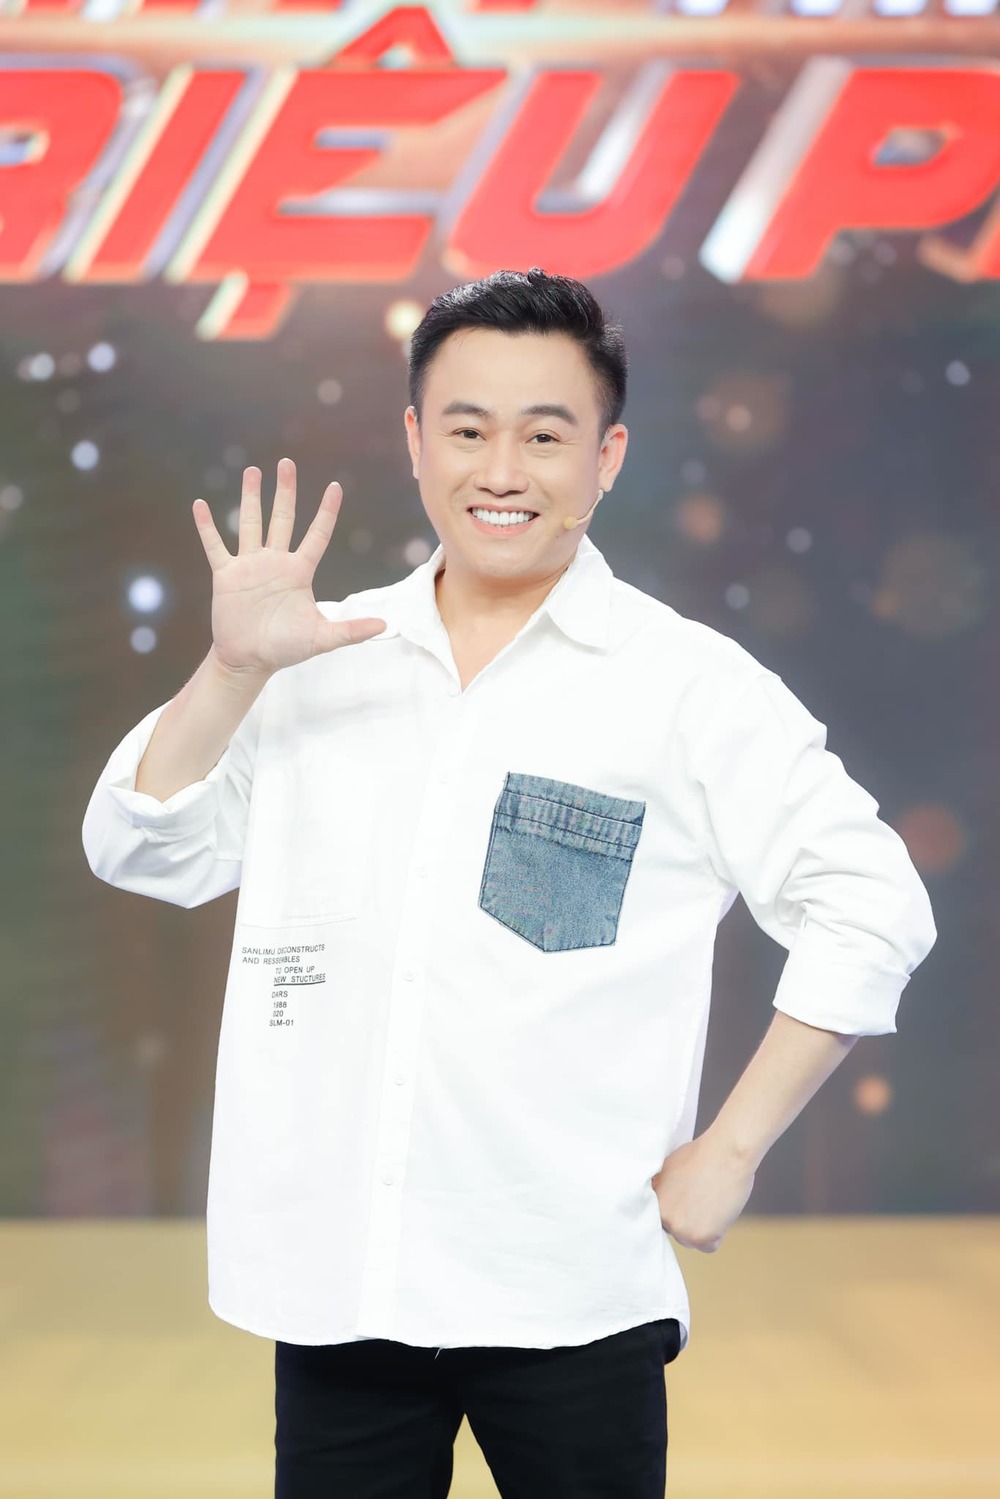 Diễn viên hài Hữu Tín là cái tến khá hot trong những gameshow nổi tiếng